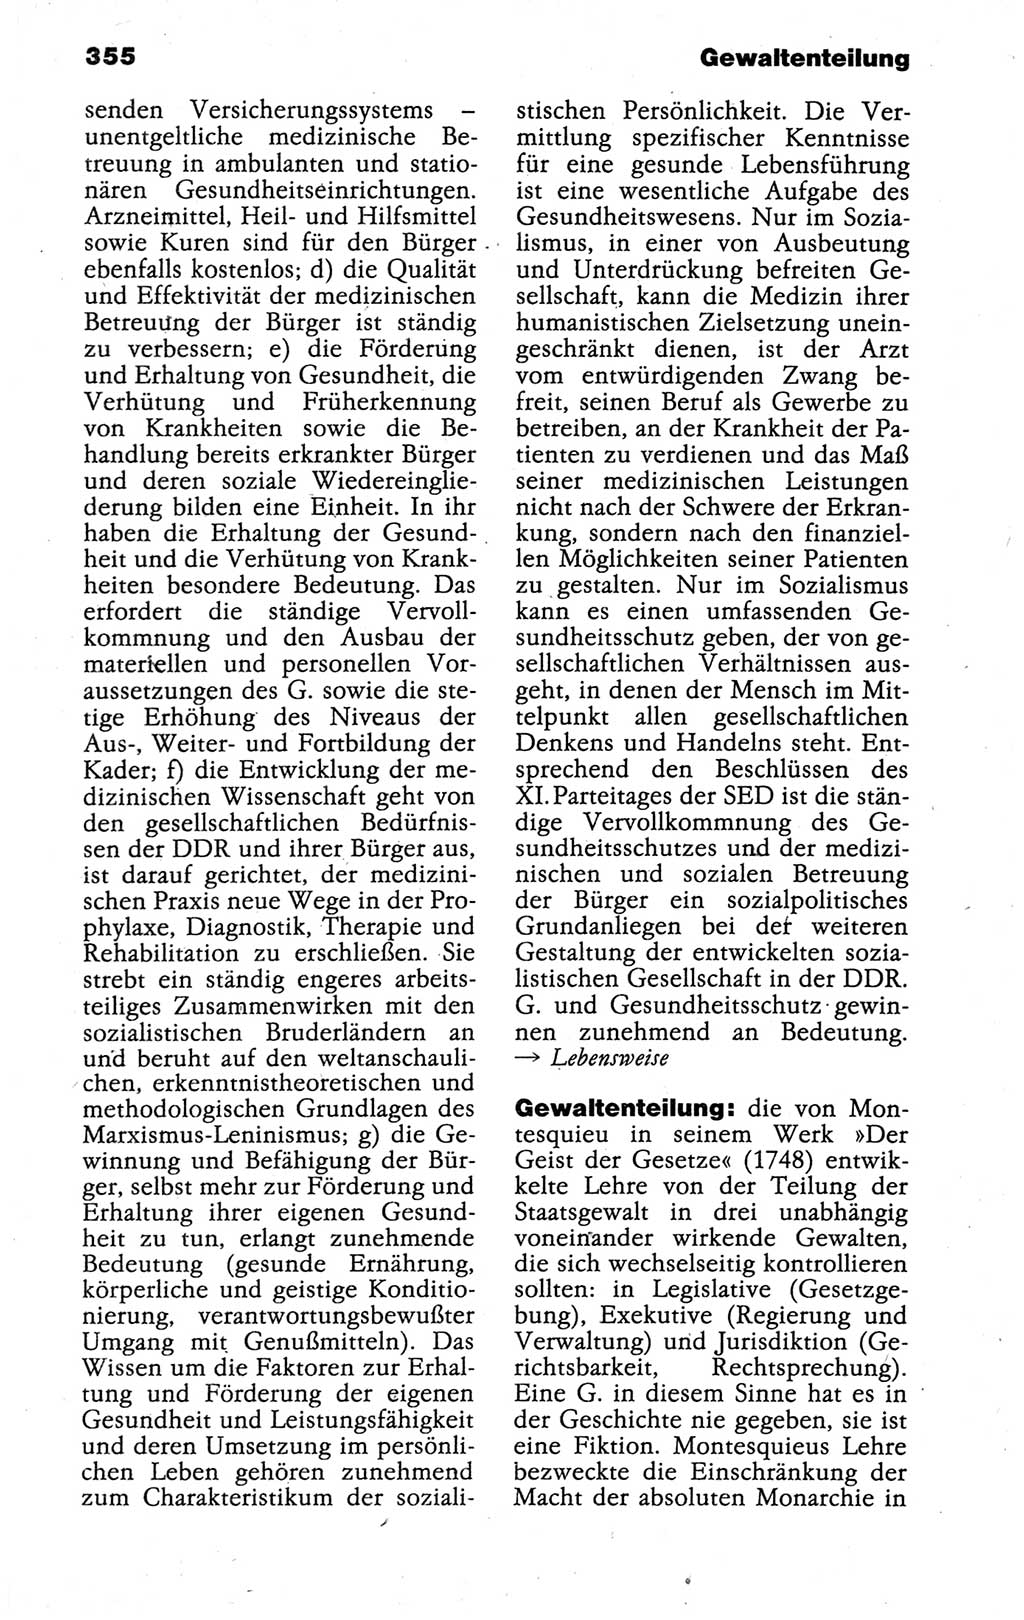 Kleines politisches Wörterbuch [Deutsche Demokratische Republik (DDR)] 1988, Seite 355 (Kl. pol. Wb. DDR 1988, S. 355)